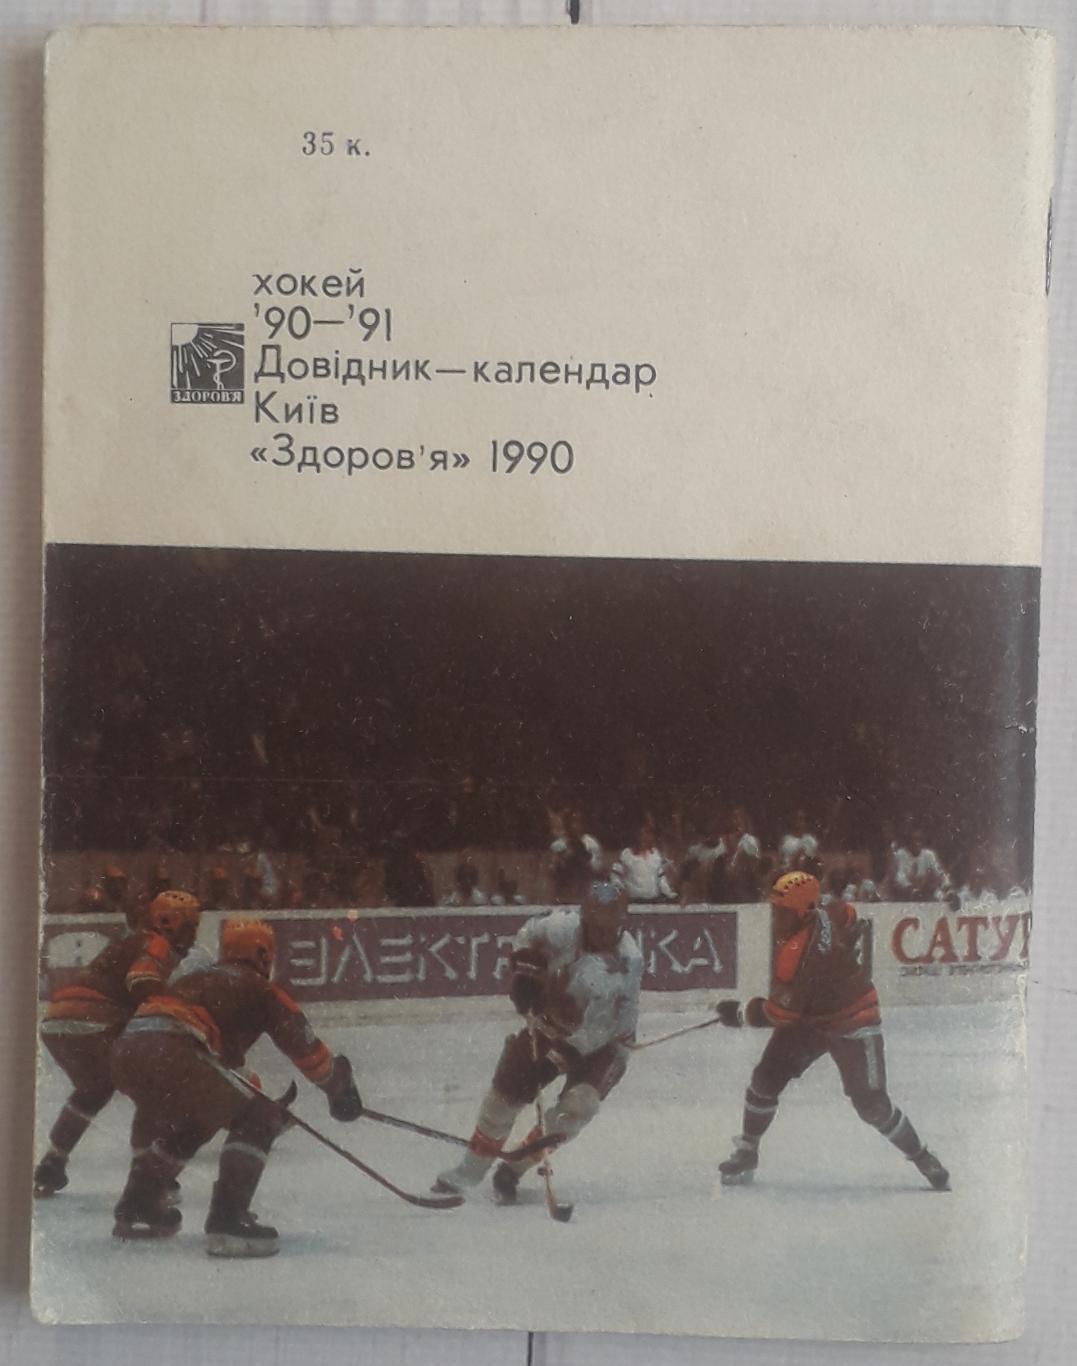 Календарь-справочник. Хоккей 90-91 Киев 2